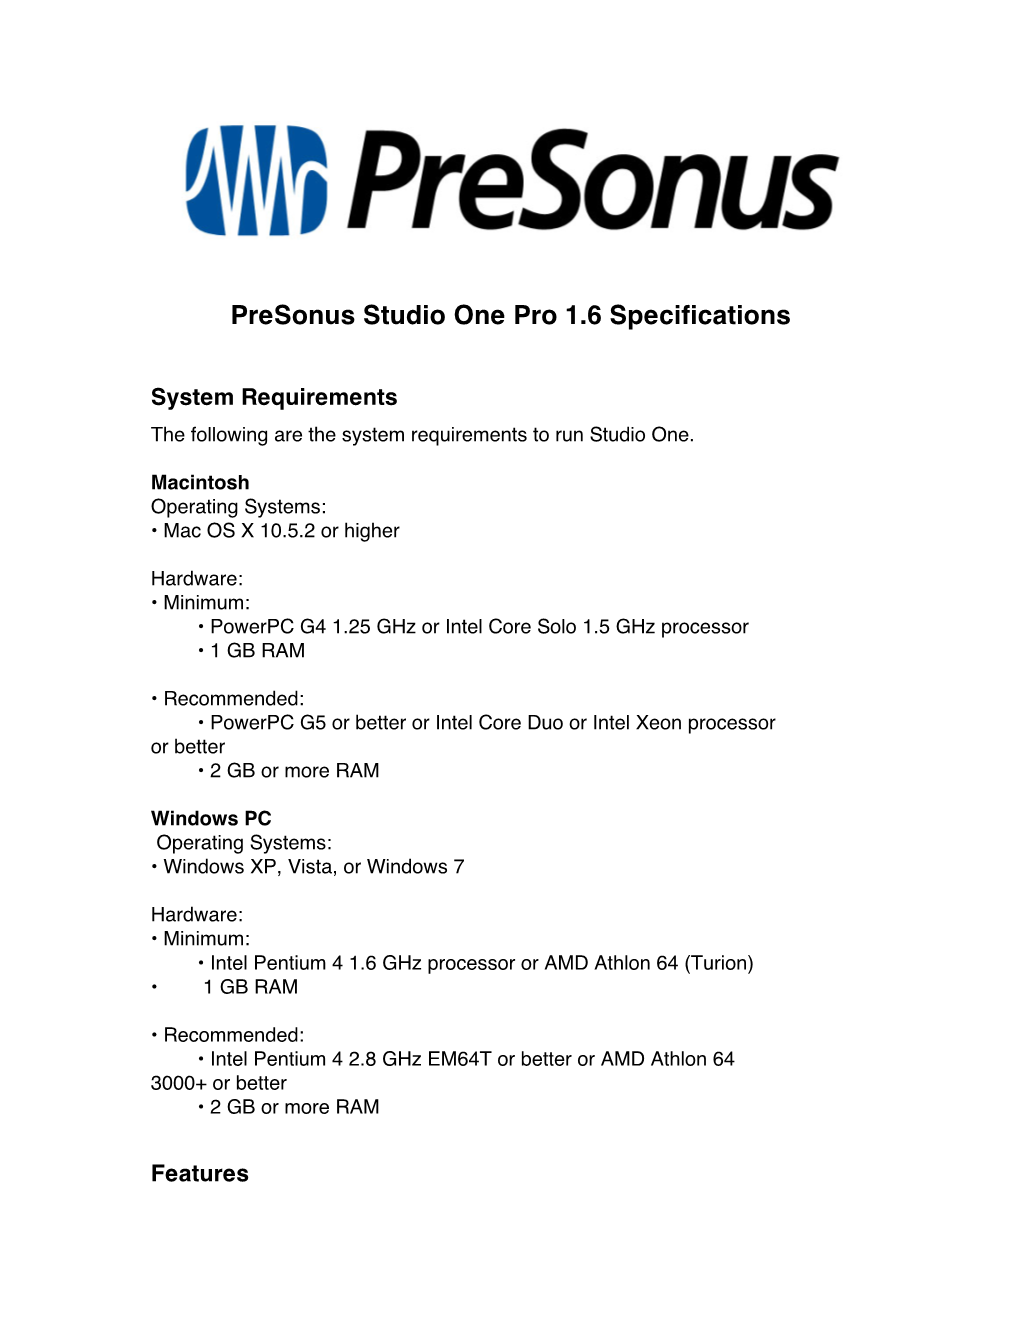 Studio One Pro Specifications